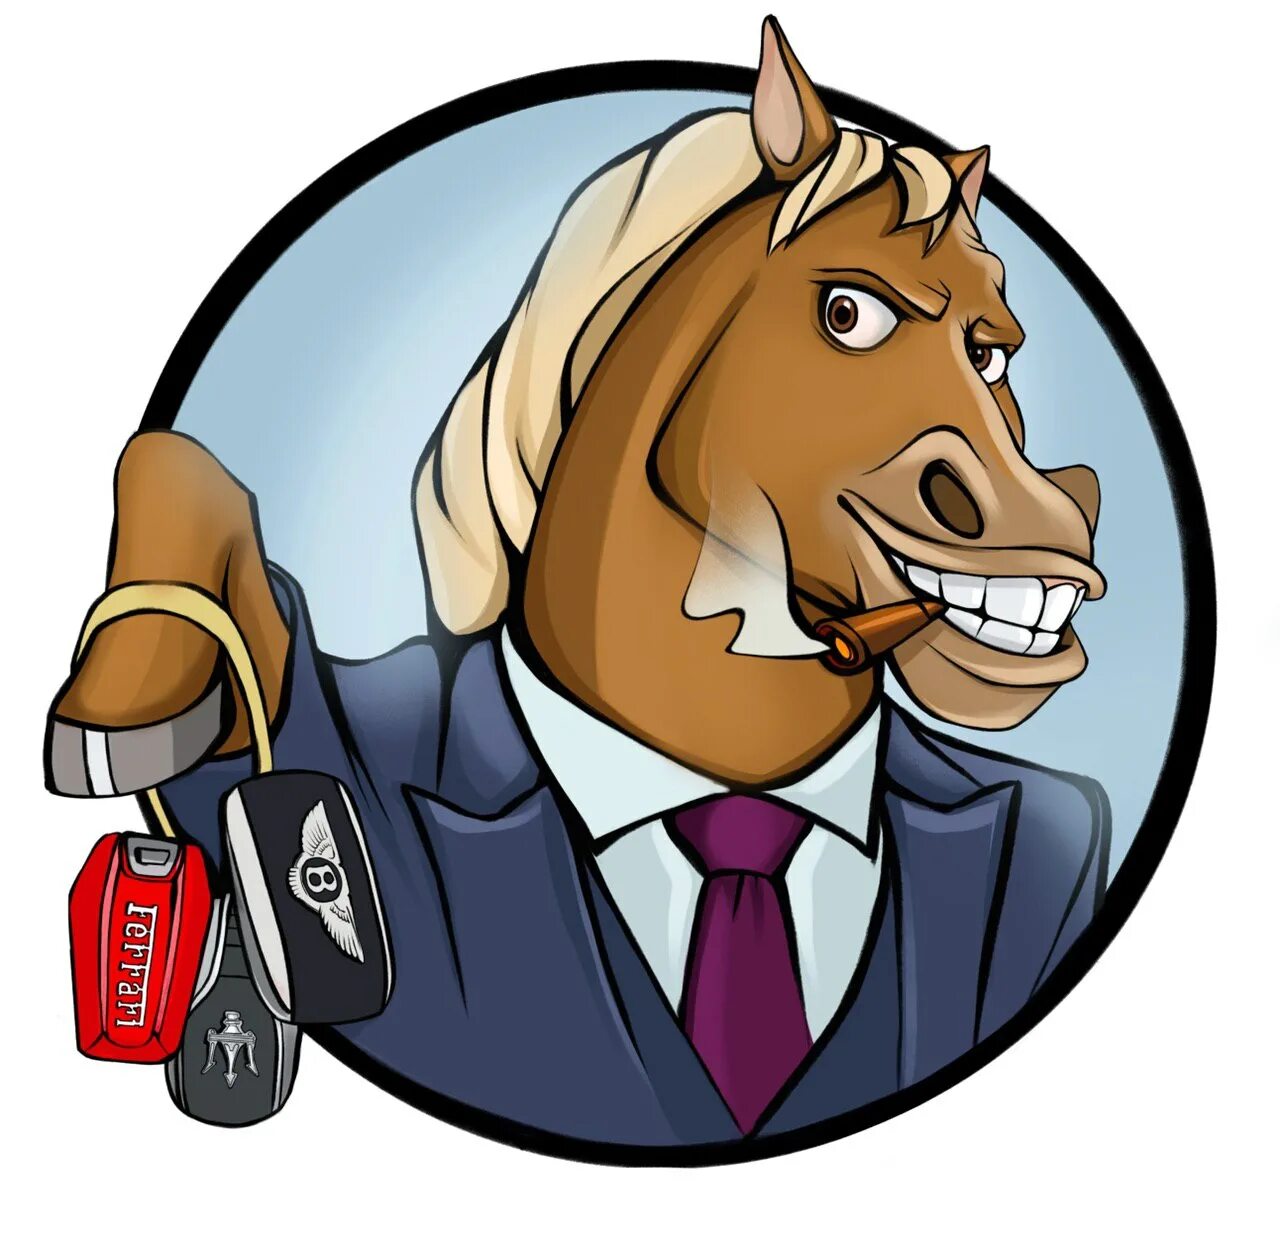 Лохматый z телеграм. Деловой конь. Телеграм конь. Стикер конь. Конь логотип.